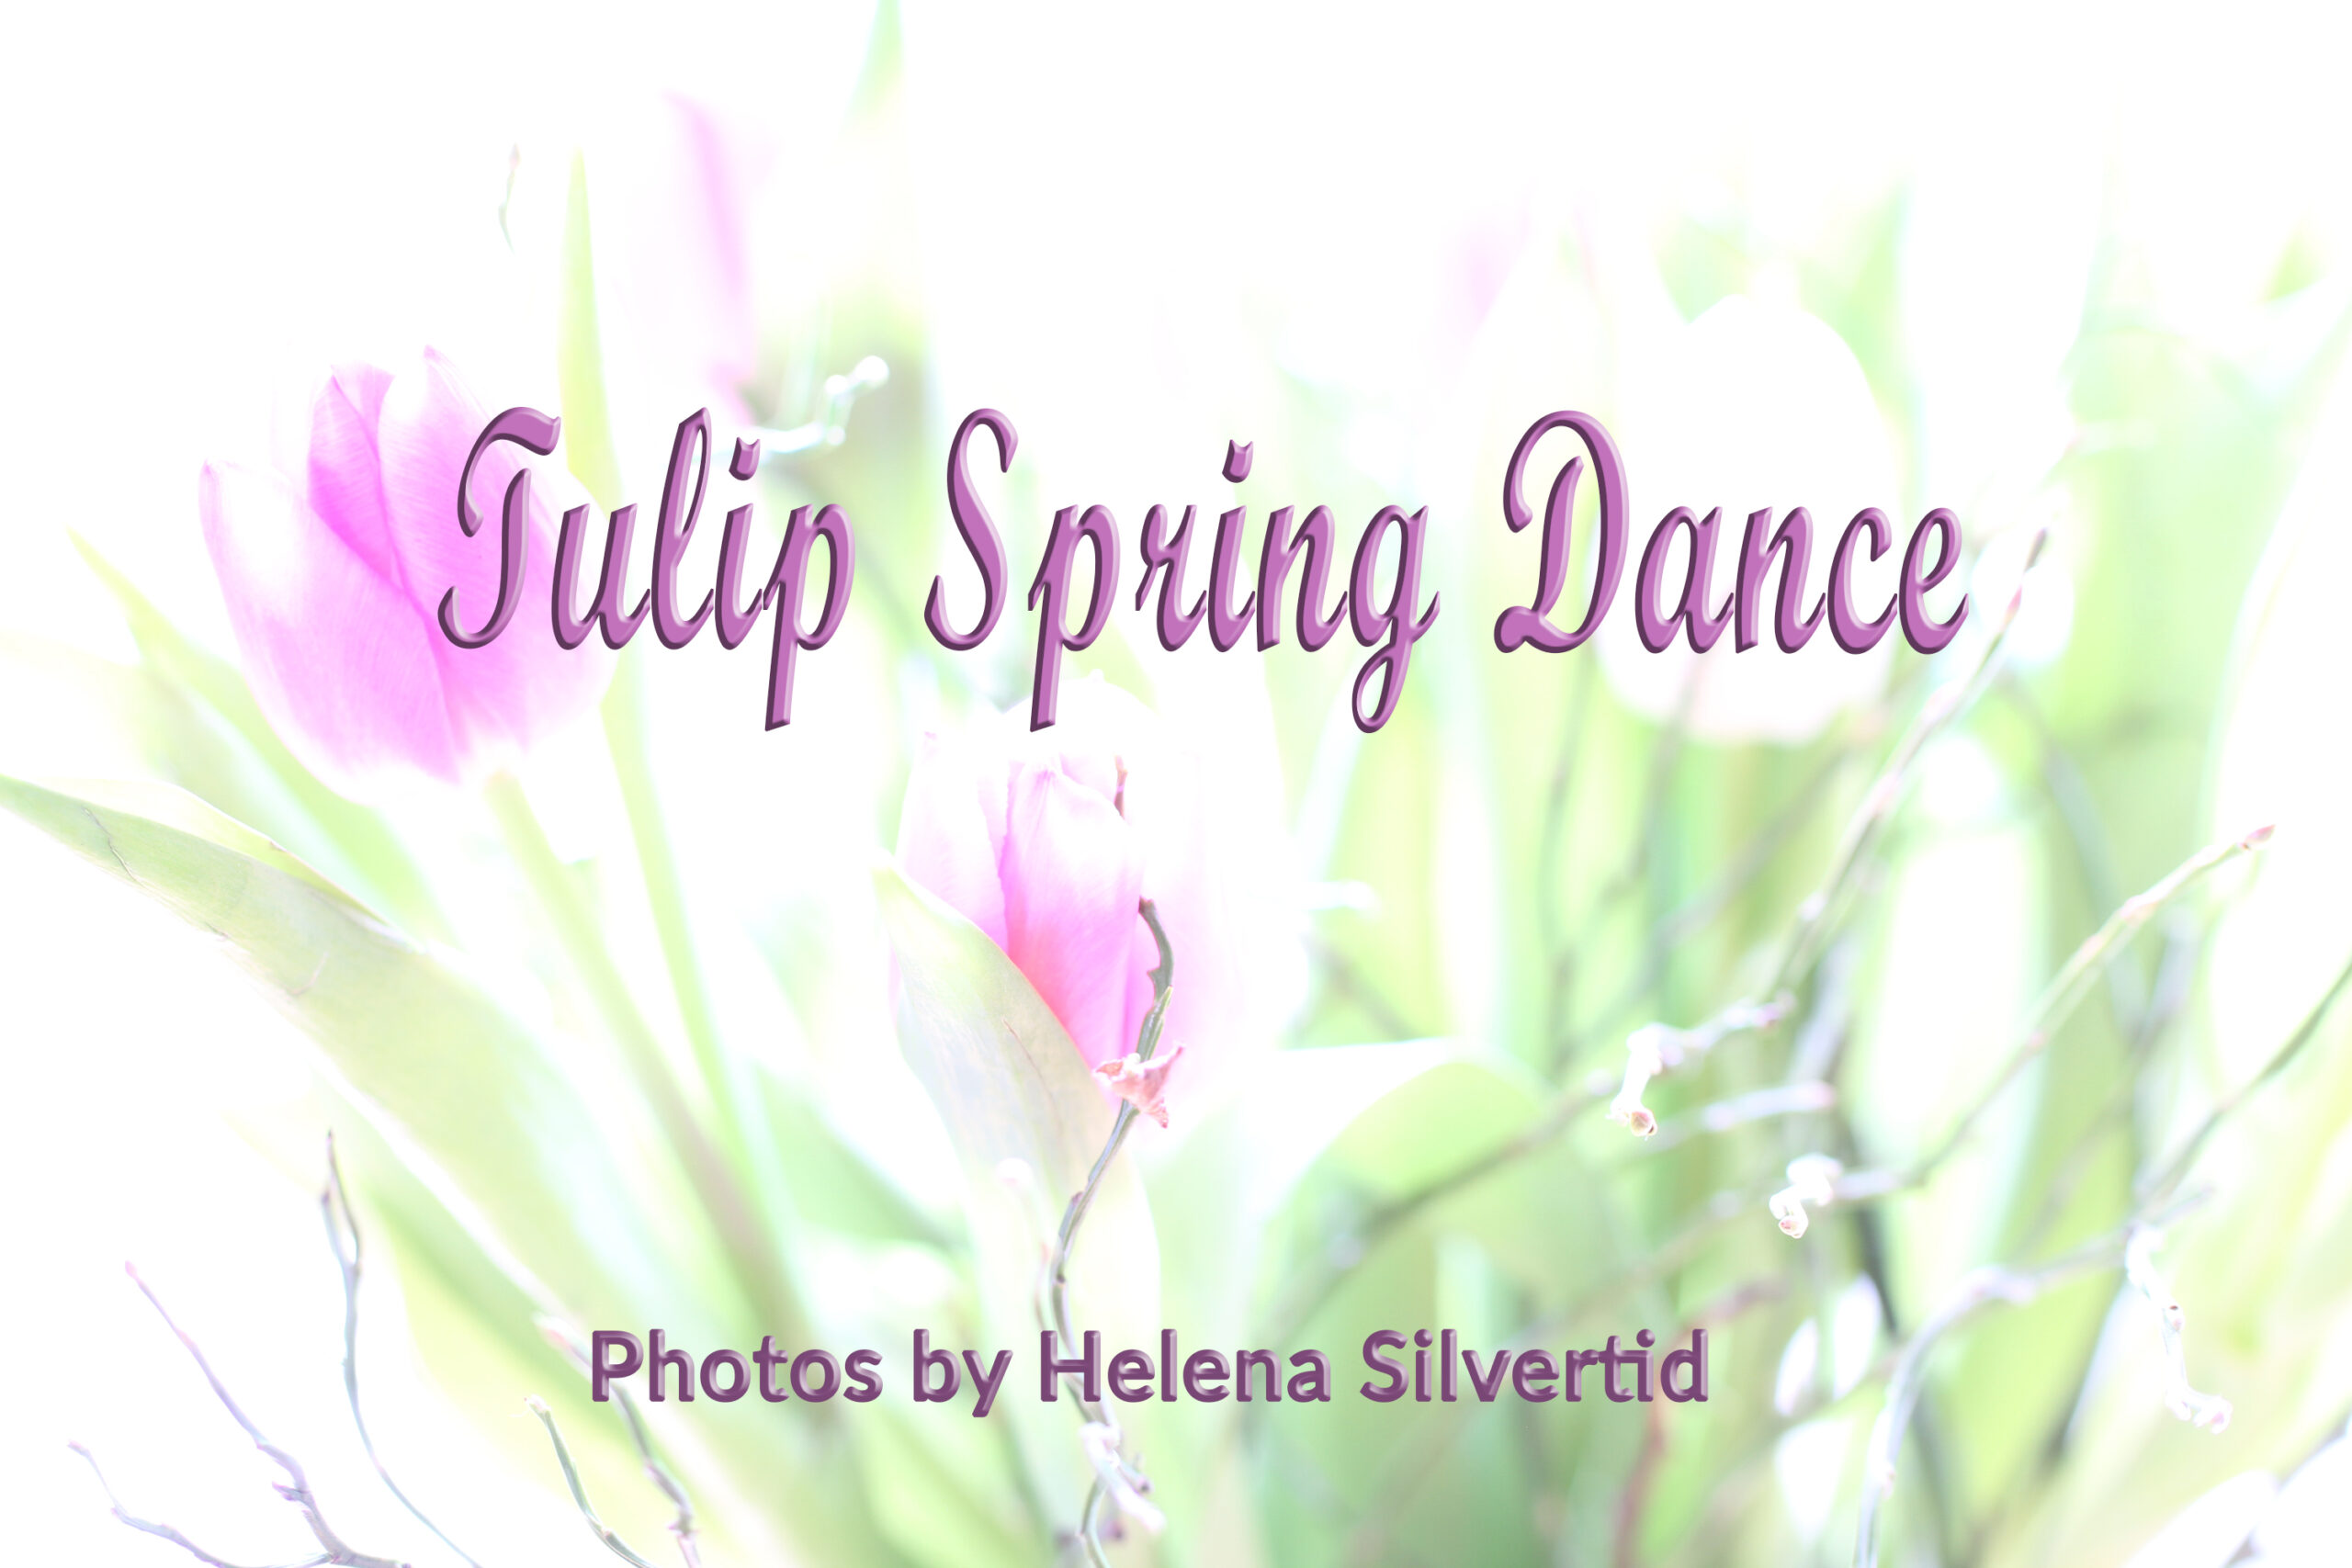 Du visar för närvarande Tulip Spring Dance